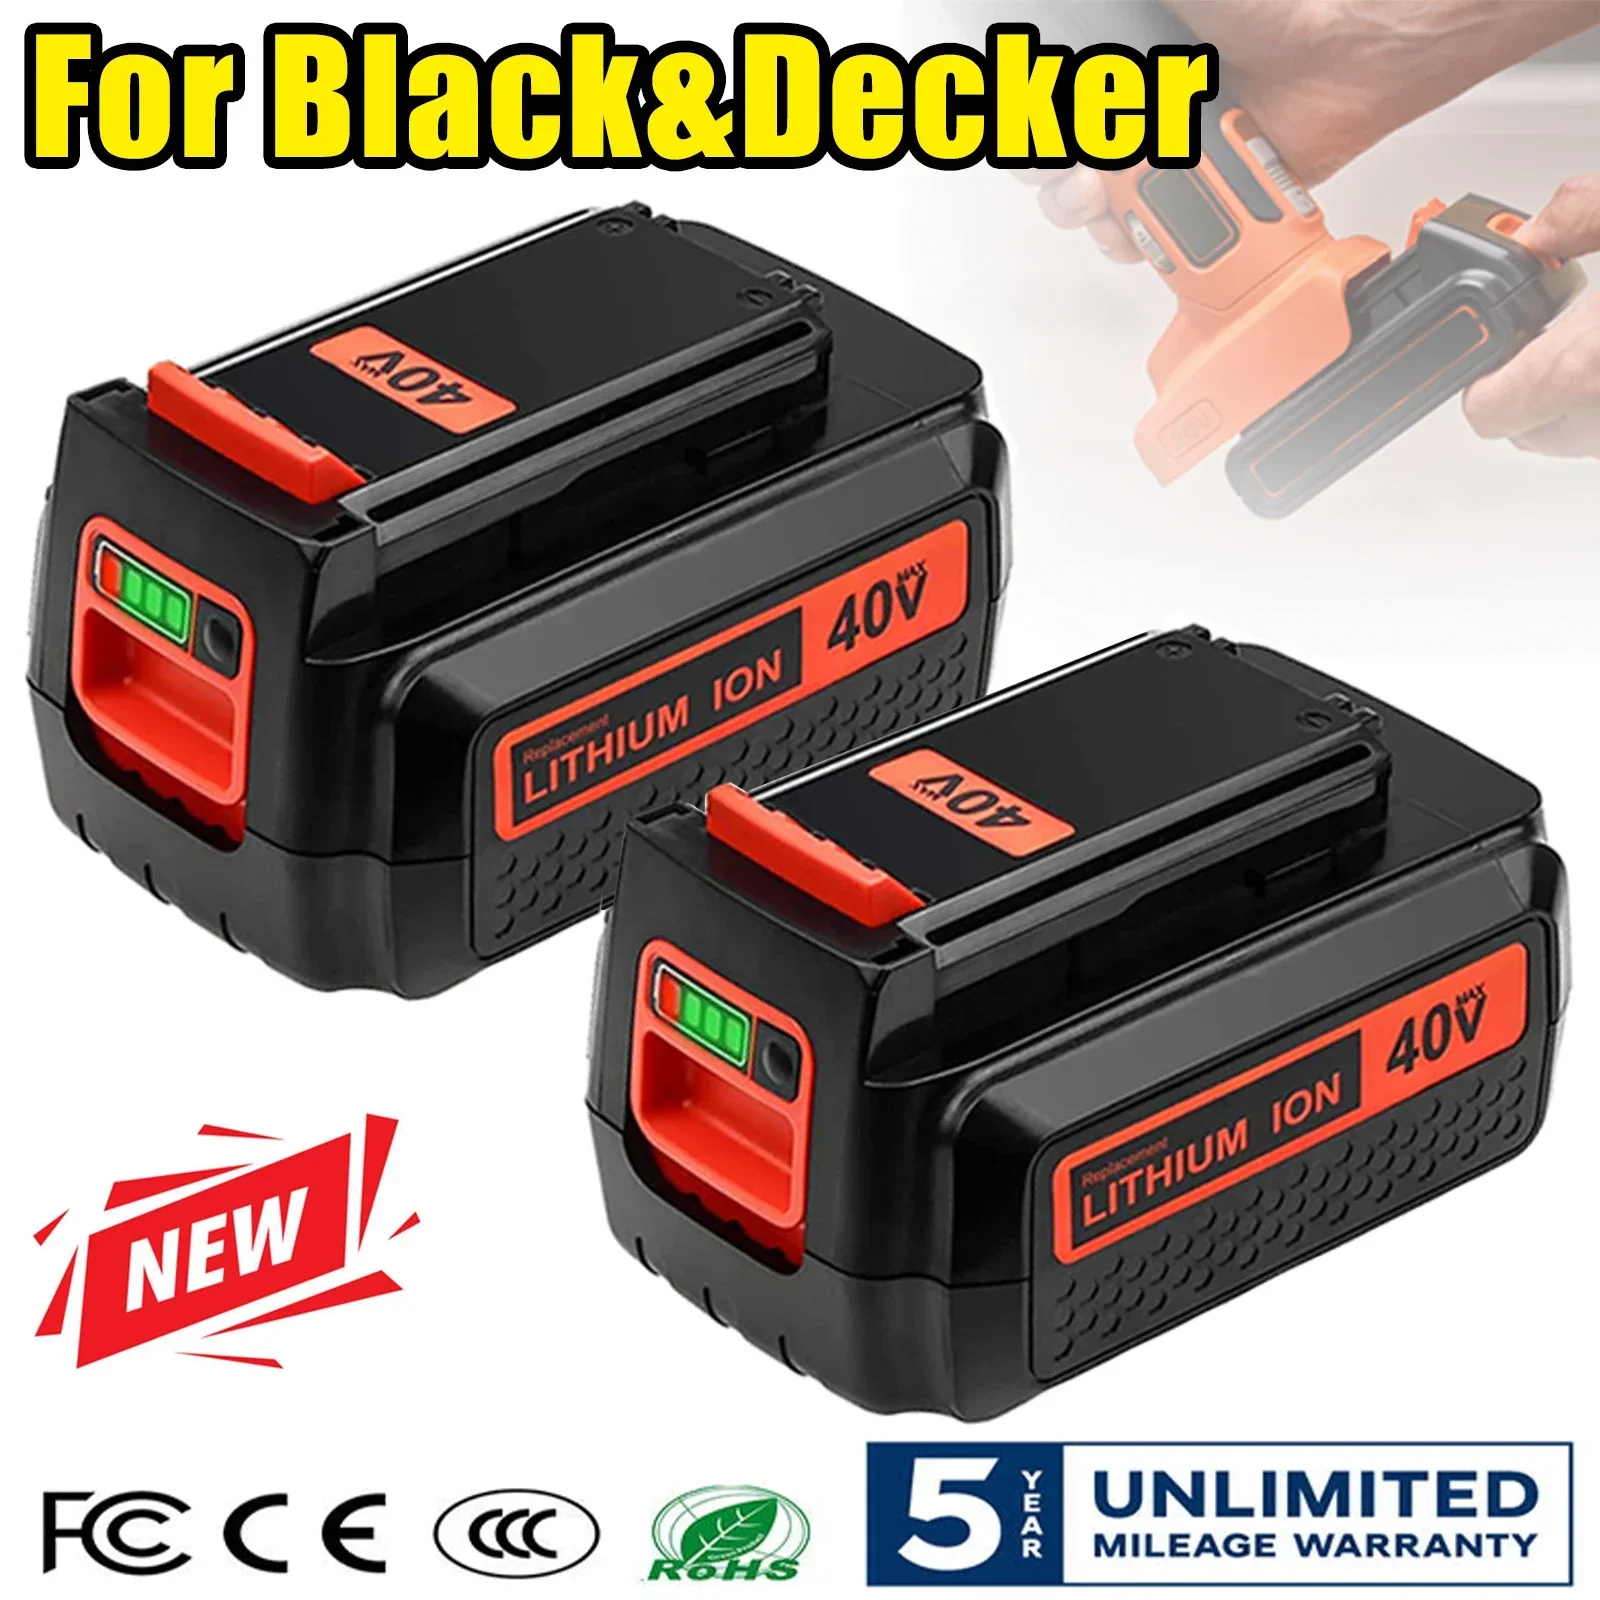 

36V/40V 6Ah Replacement Battery for Black & Decker 36V~40V LBX2040 LBX36 LBXR36 LBXR2036 LST540 LCS1240 Cordless Tool Battery